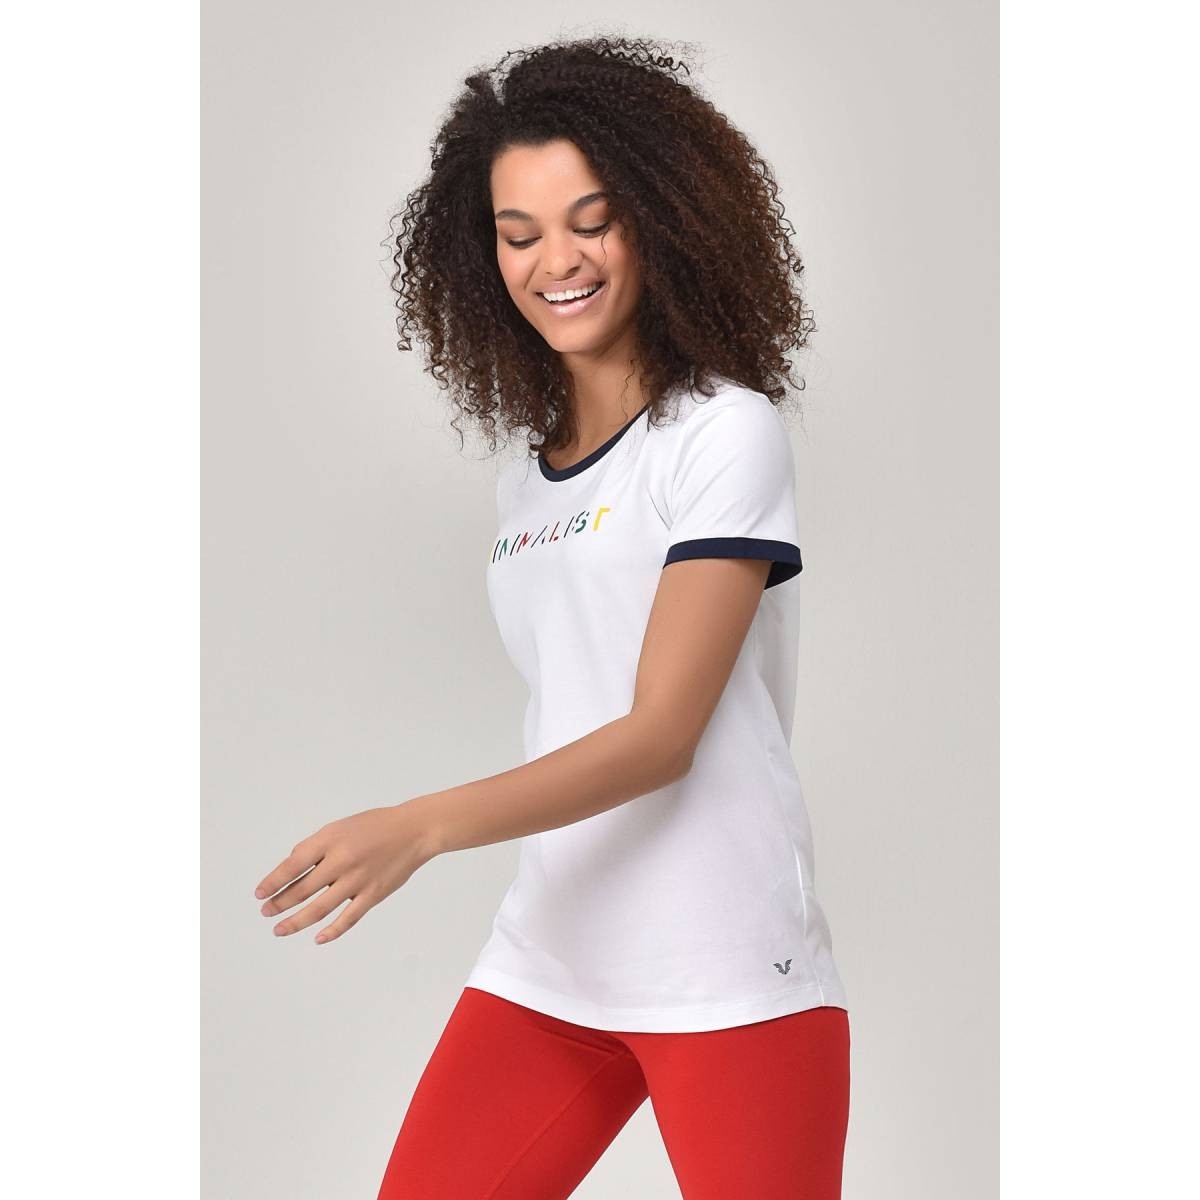 Flo Beyaz Kadın T-shirt  GS-8070. 3